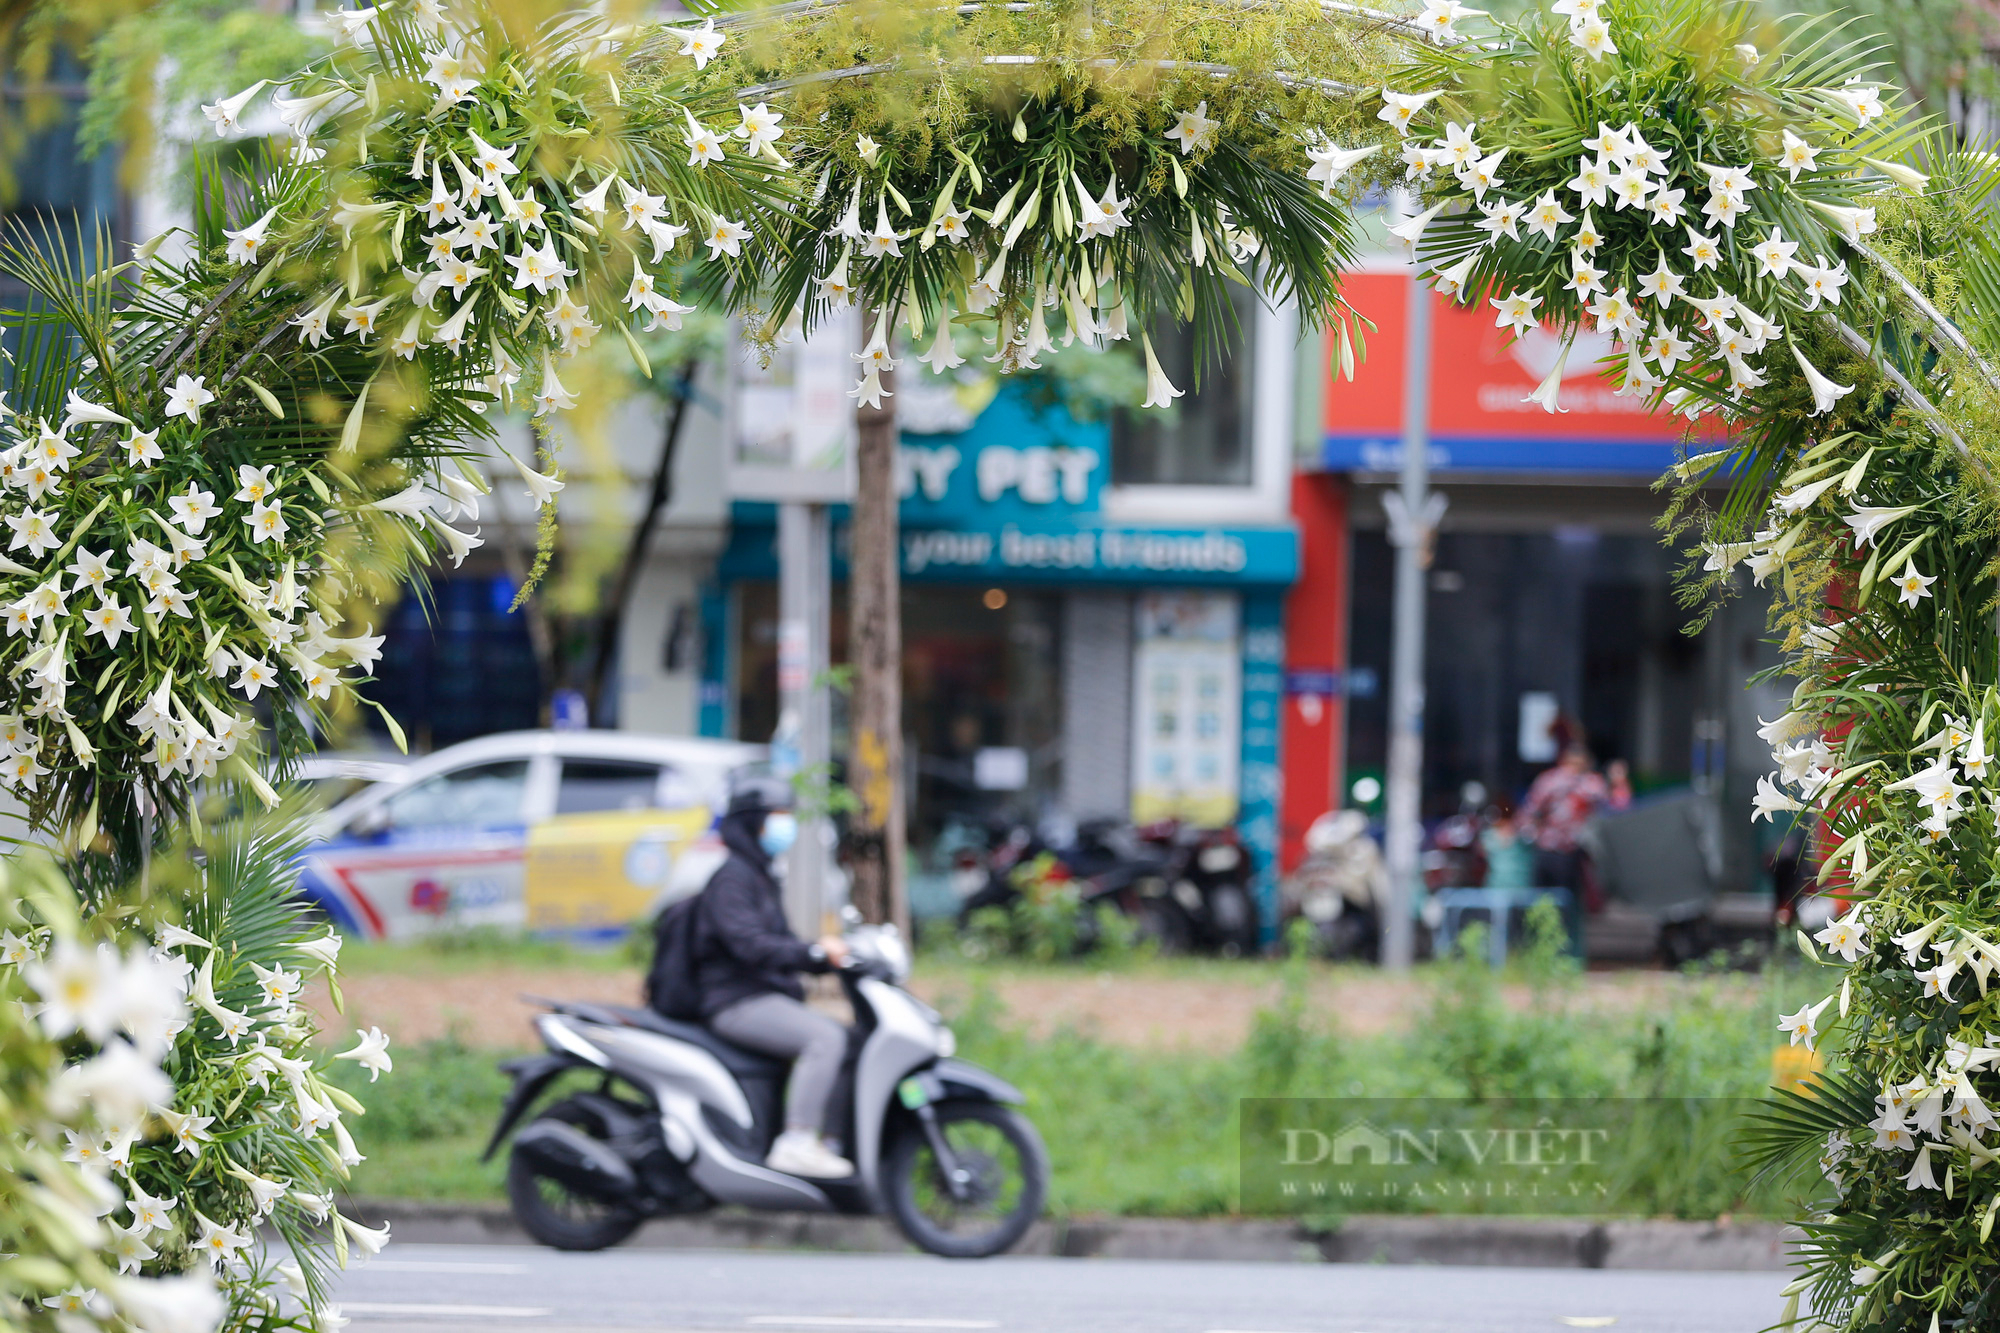 Hàng ngàn đóa hoa bách hợp khoe sắc lung linh tại Hà Nội - Ảnh 12.